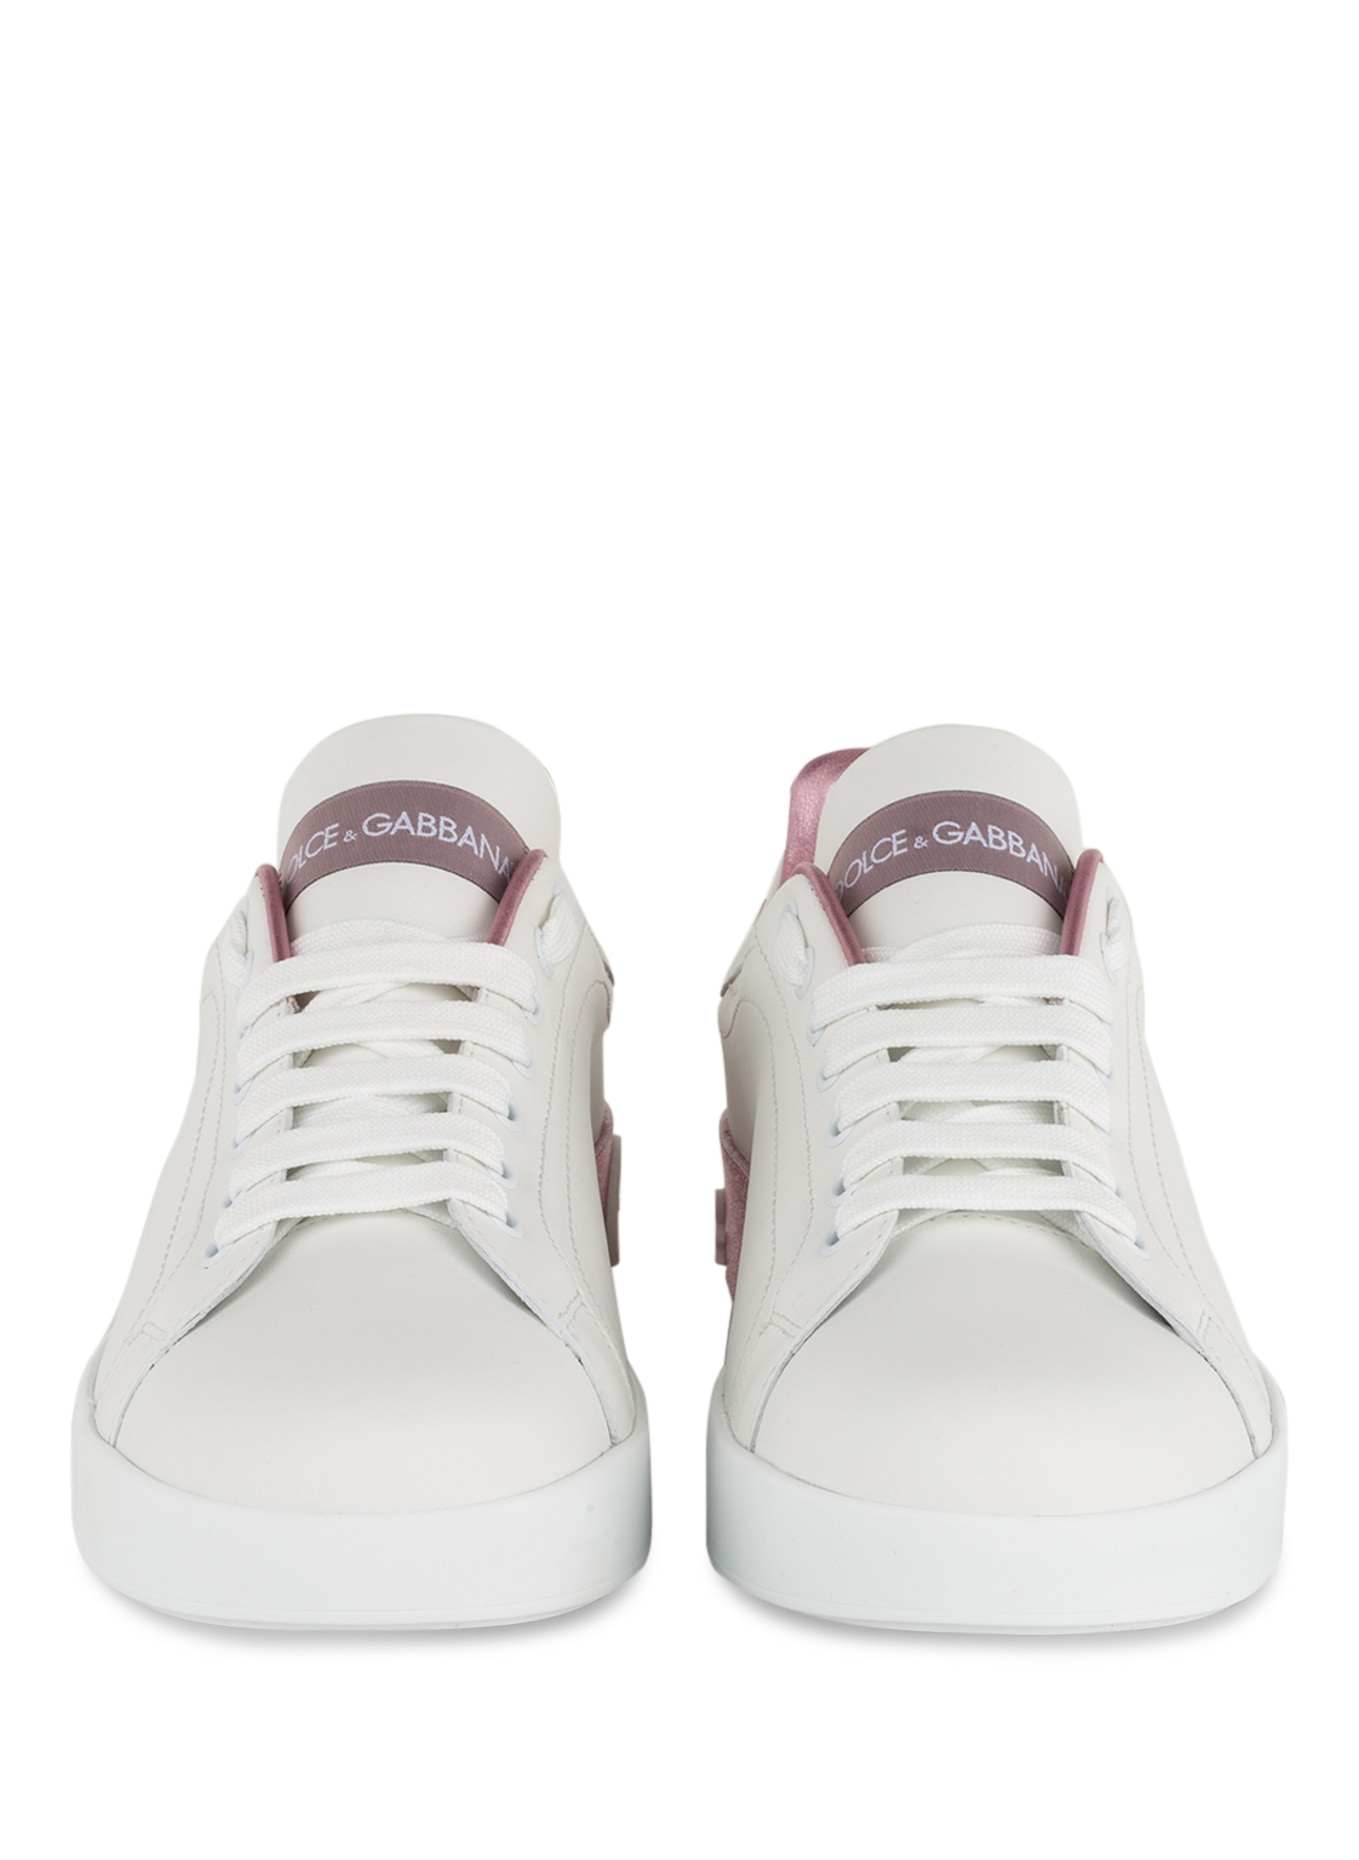 DOLCE & GABBANA Sneakers PORTOFINO, Color: WHITE/ LIGHT PURPLE (Image 3)